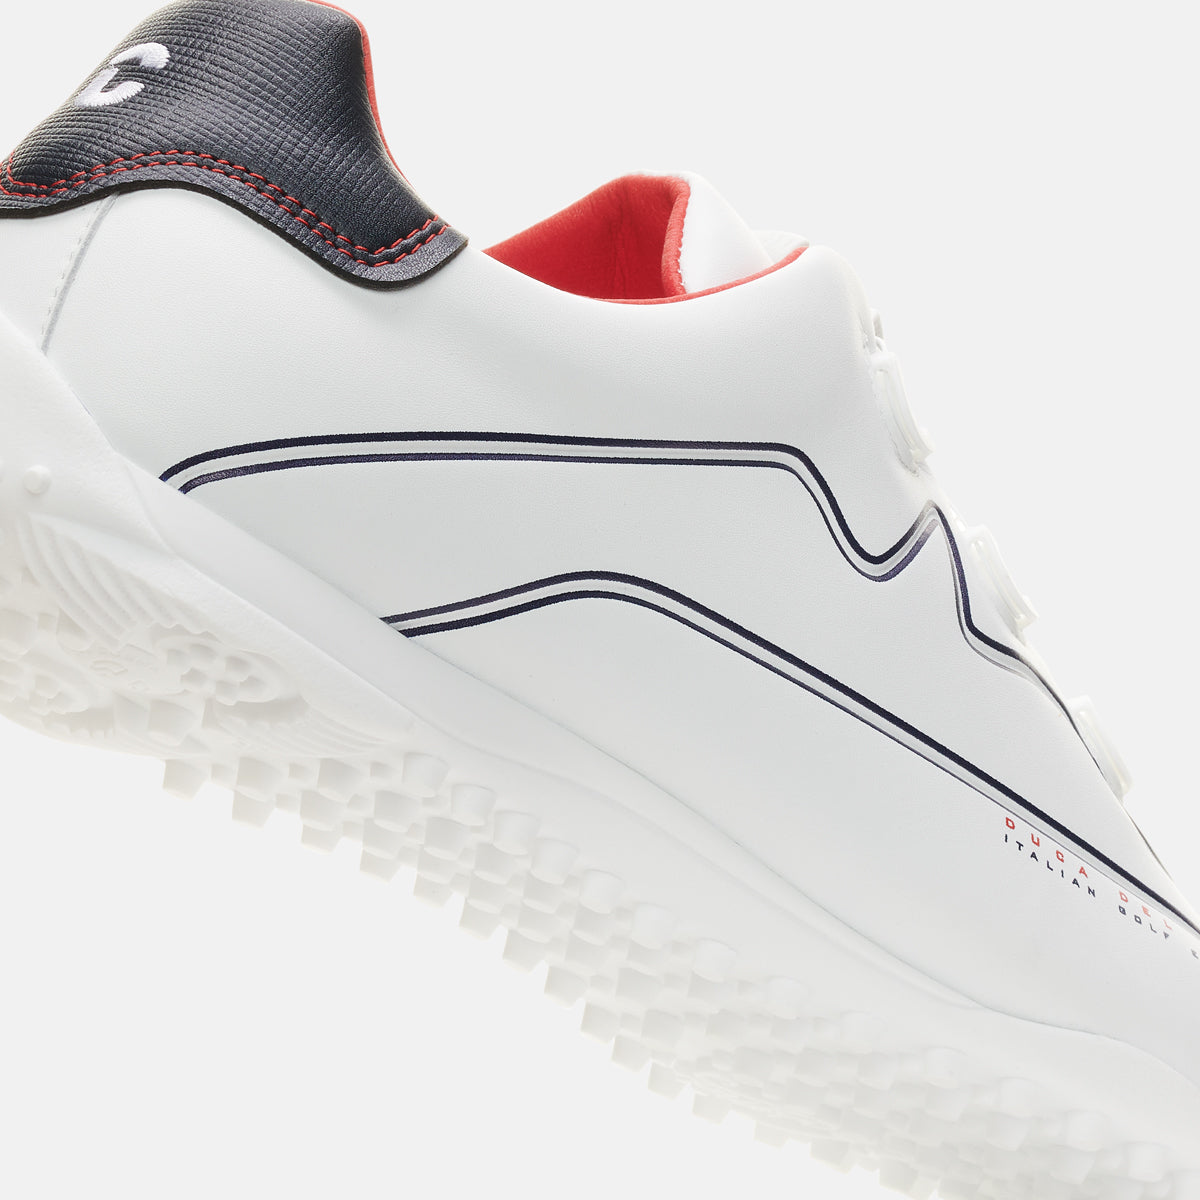 Navarino - White Men's Golf Shoes